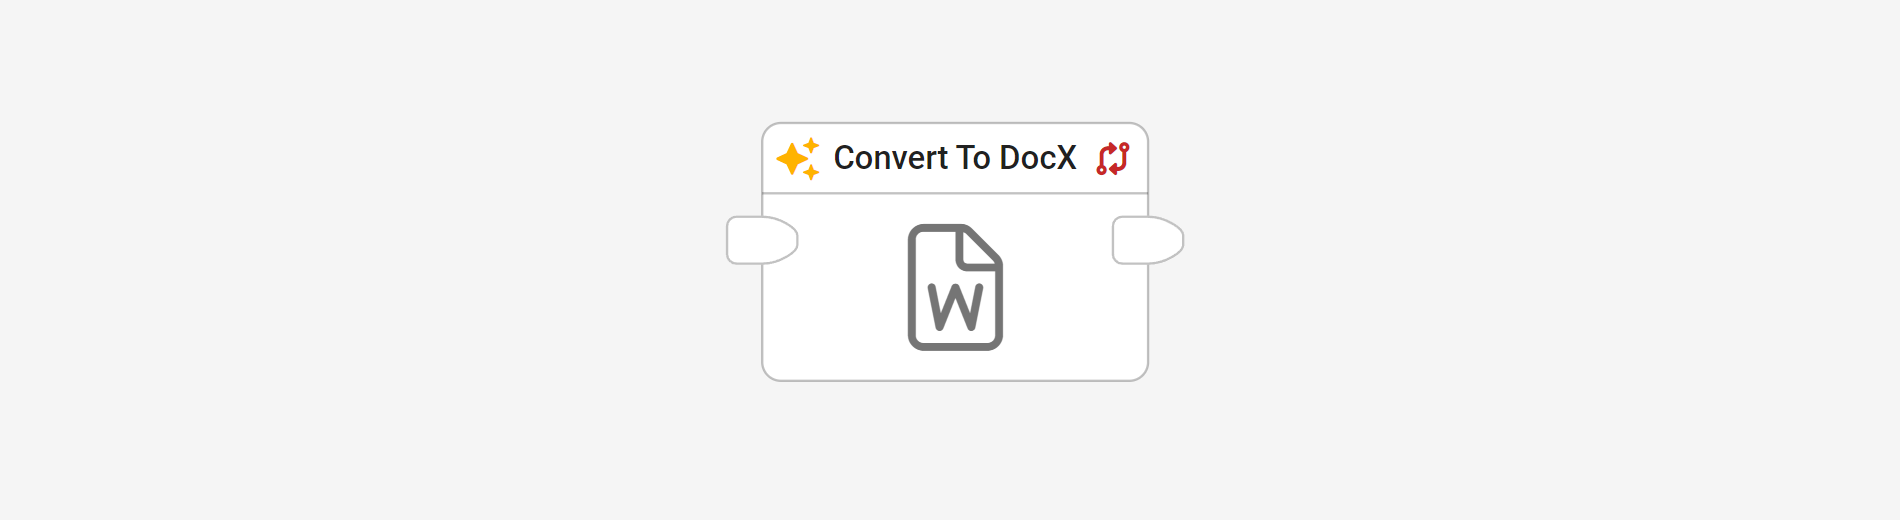 Convert to Docx block in flow editor